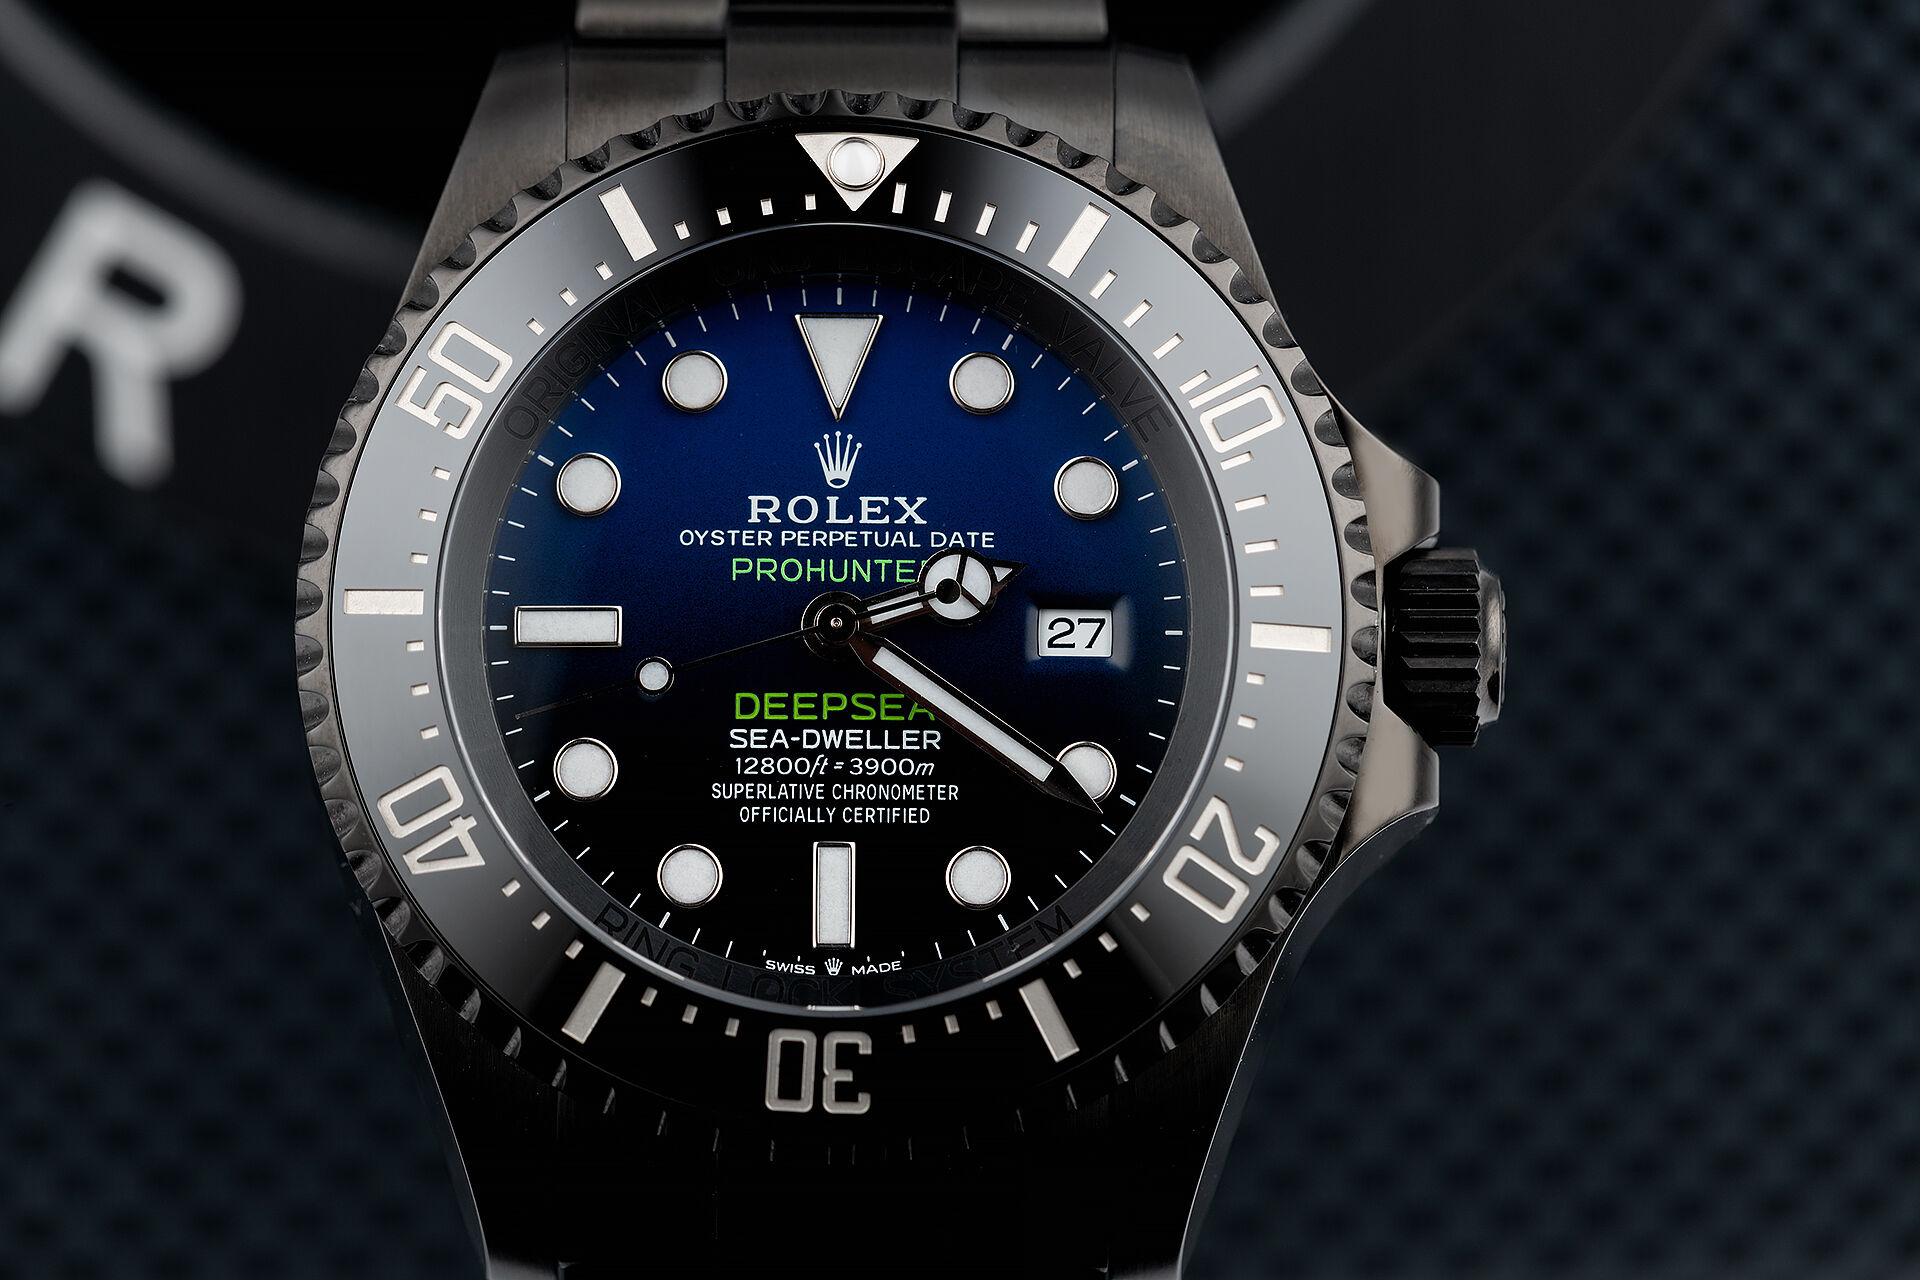 ref 126660 | Brand New - 5 Year Warranty | Pro Hunter Pro Hunter Deepsea D-Blue